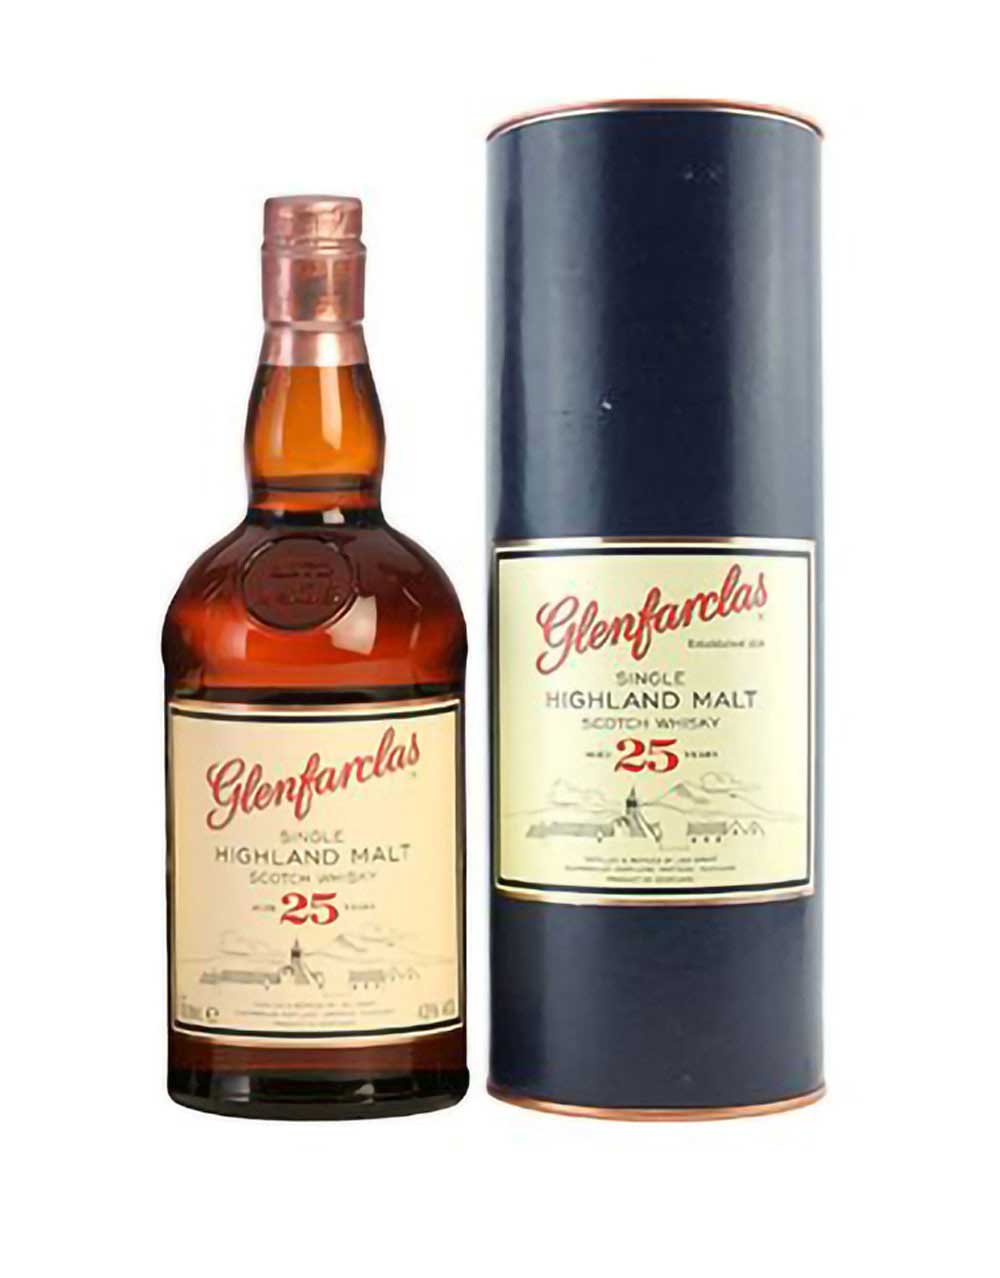 Glenfarclas 21 Year Old Single Malt Scotch Whisky